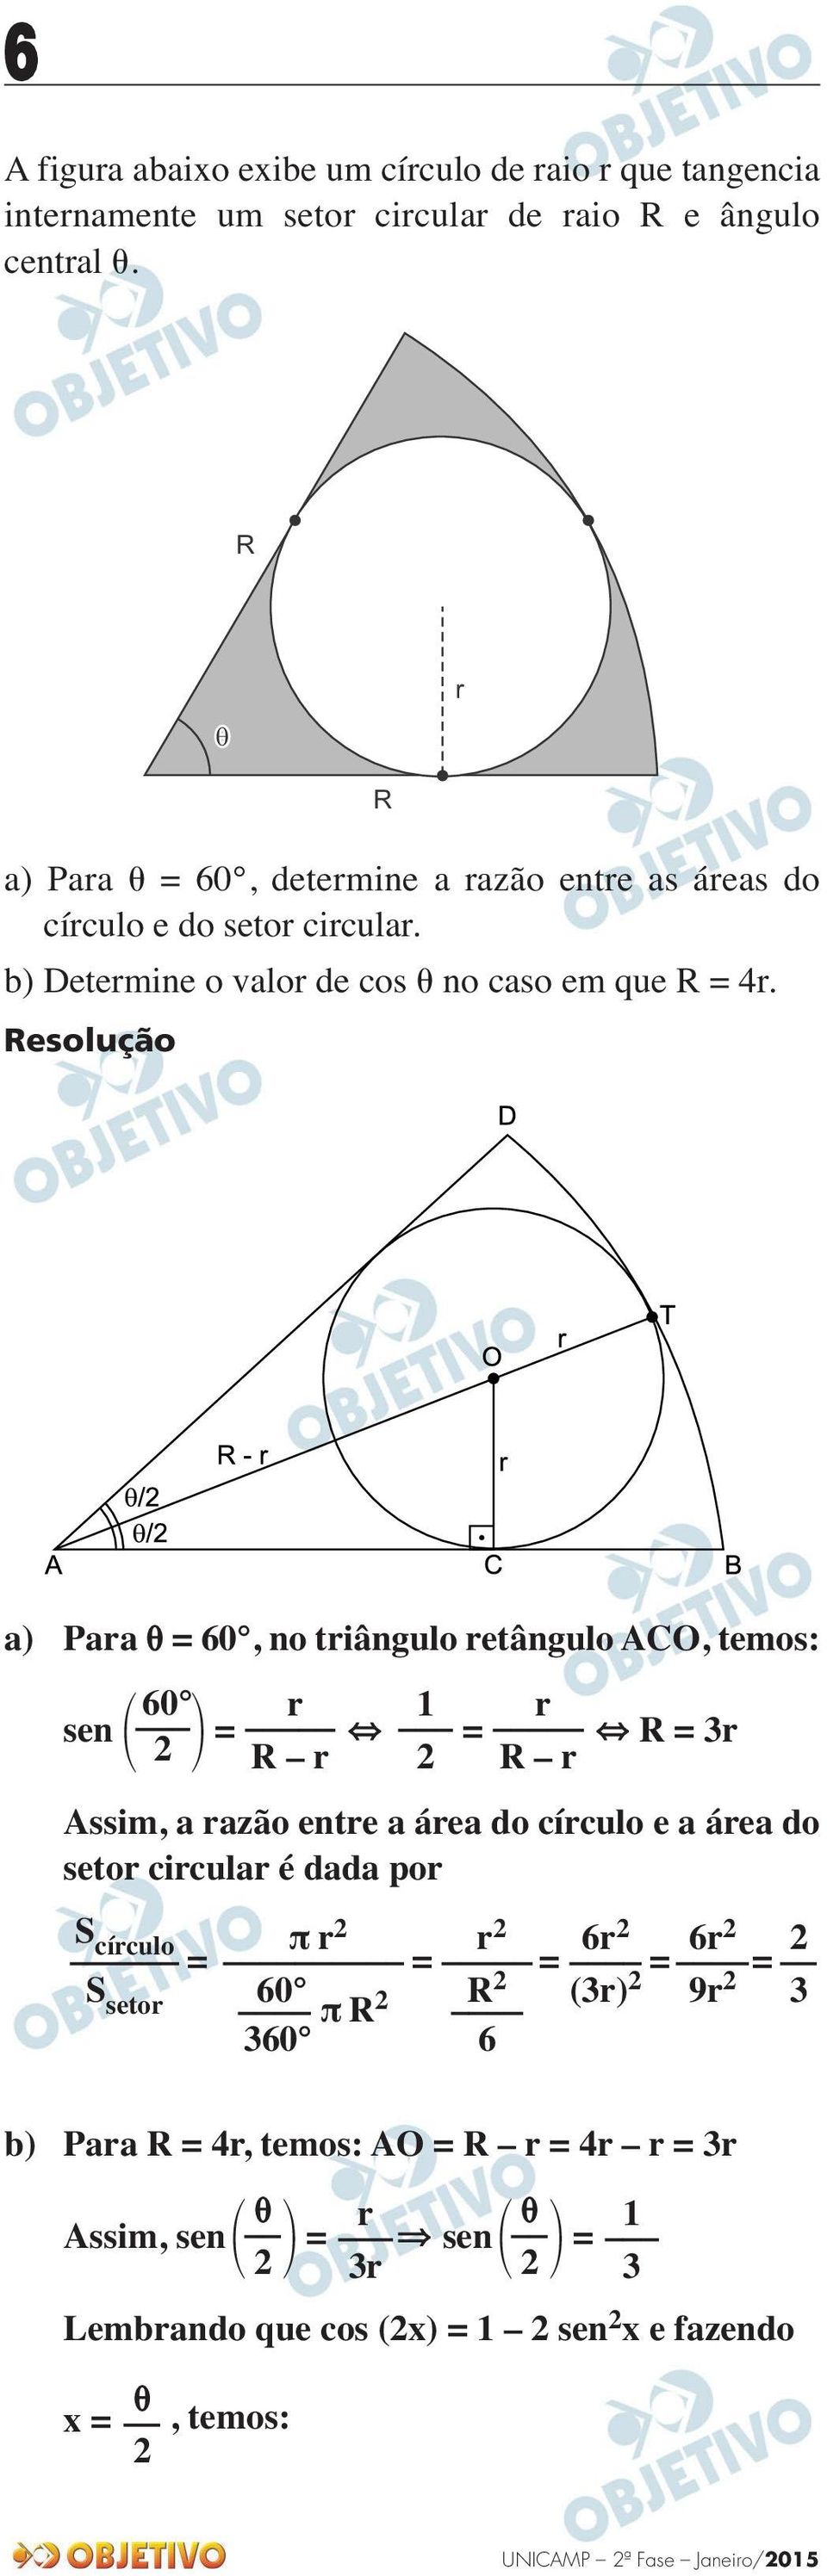 R a) Para = 60, no triângulo retângulo ACO, temos: 60 r r sen = = R = 3r R r R r Assim, a razão entre a área do círculo e a área do setor circular é